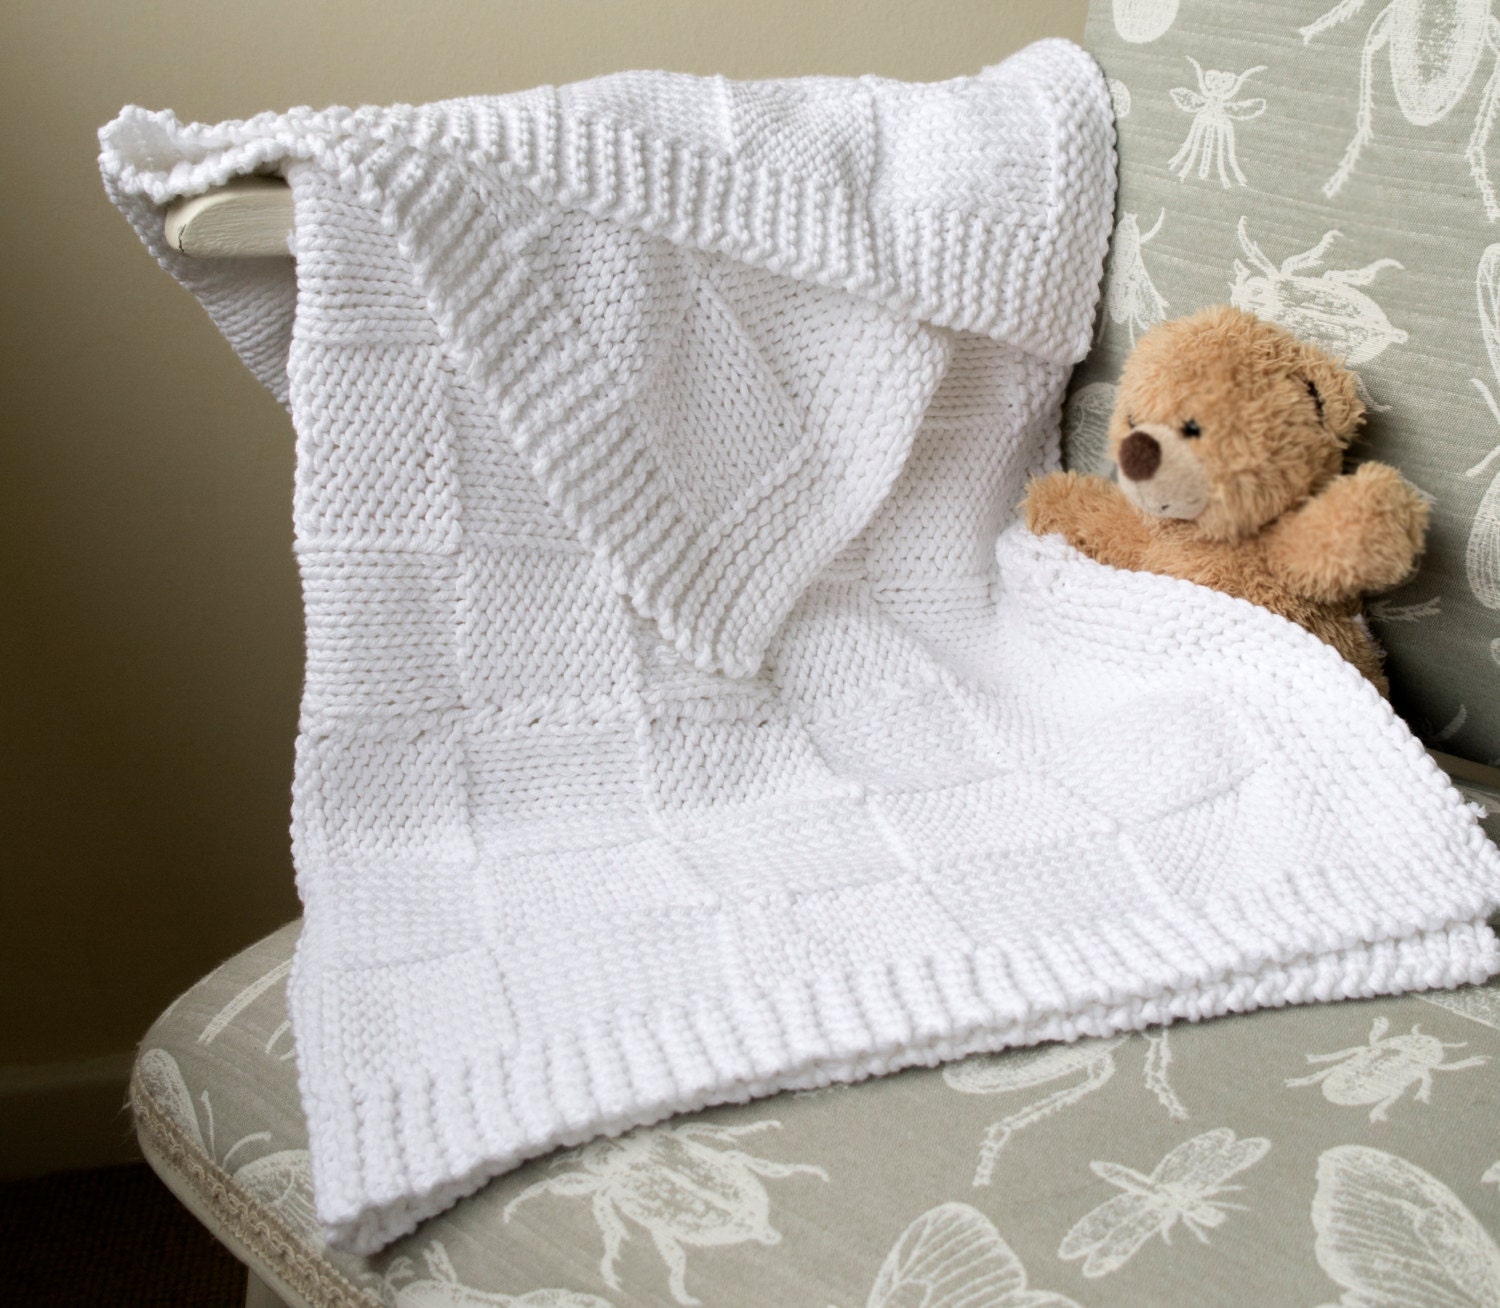 Ombre Yarn Crochet Baby Blanket Pattern, Security Blanket Crochet Pattern,  Pdf Pattern Quick Baby Shower Gift -  Israel